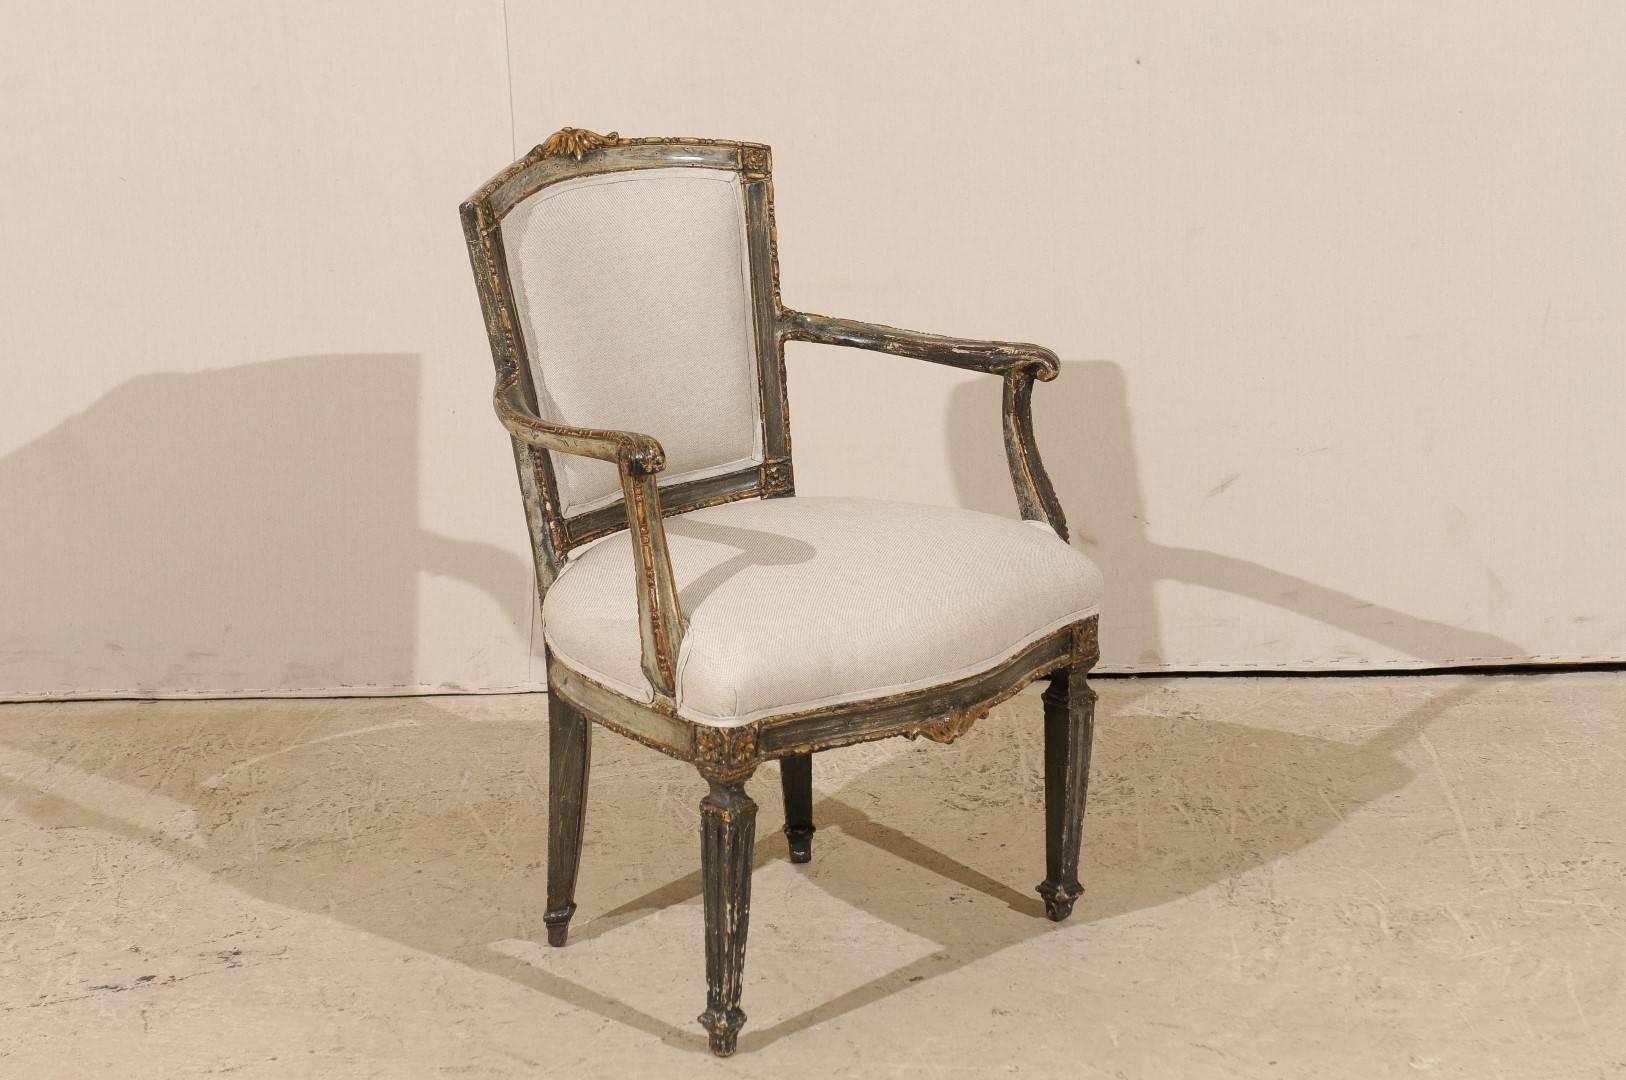 Fauteuil d'appoint italien unique du début du XIXe siècle avec des détails en bois richement sculptés. Cette chaise d'appoint italienne est ornée d'une feuille d'acanthe stylisée joliment sculptée qui orne sa crête et se retrouve dans sa jupe. Il